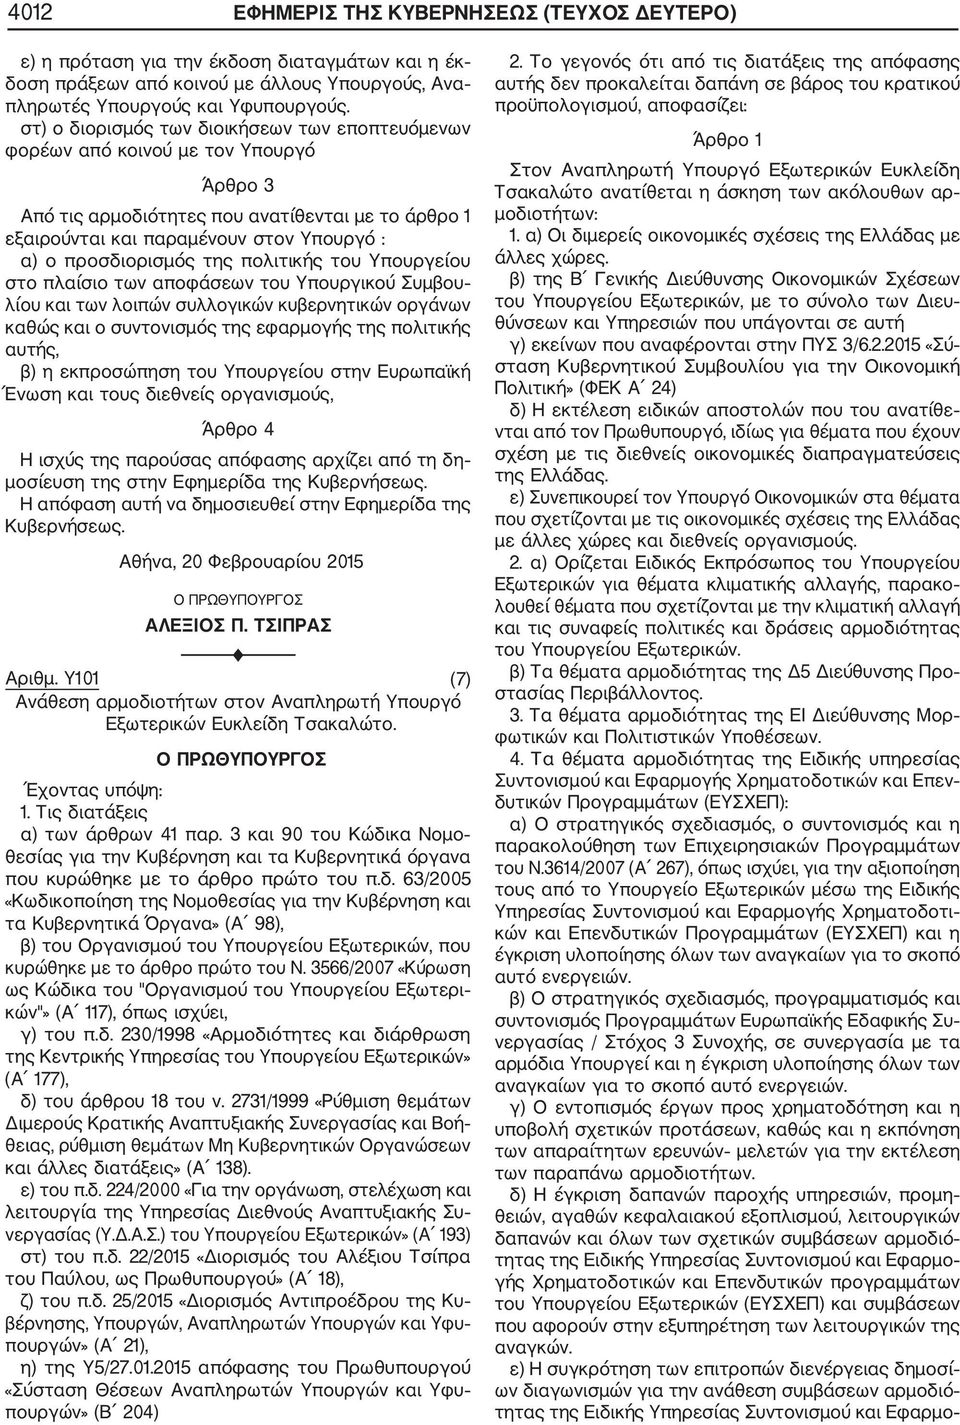 Υ101 (7) Εξωτερικών Ευκλείδη Τσακαλώτο. β) του Οργανισμού του Υπουργείου Εξωτερικών, που κυρώθηκε με το άρθρο πρώτο του Ν.